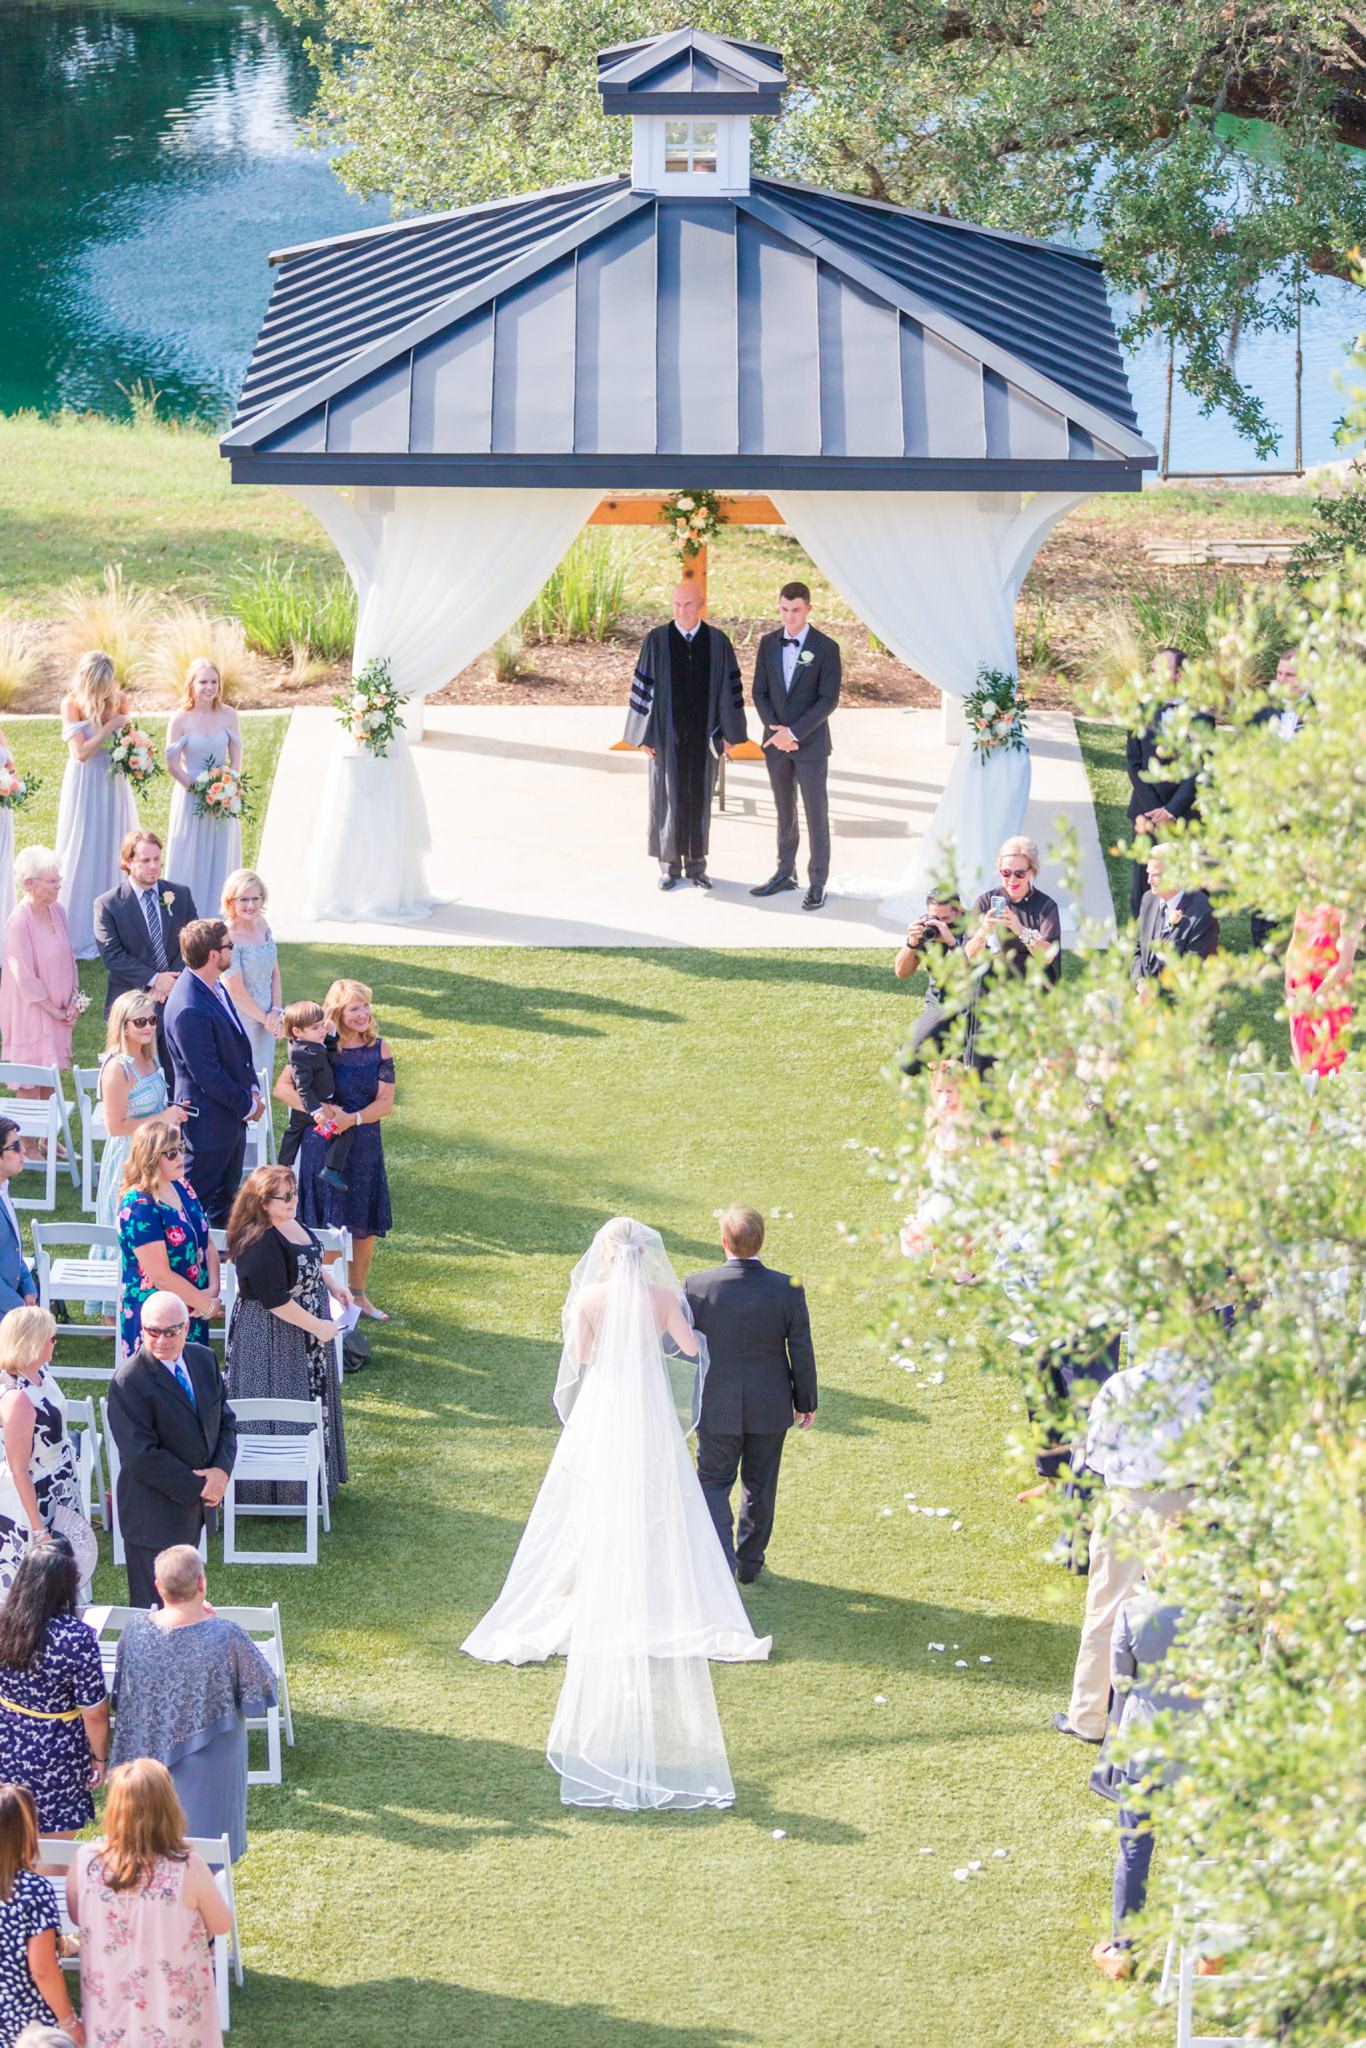 A Grey and Peach Summer Wedding at Kendall Point in Boerne, TX by Dawn Elizabeth Studios, San Antonio Wedding Photographer